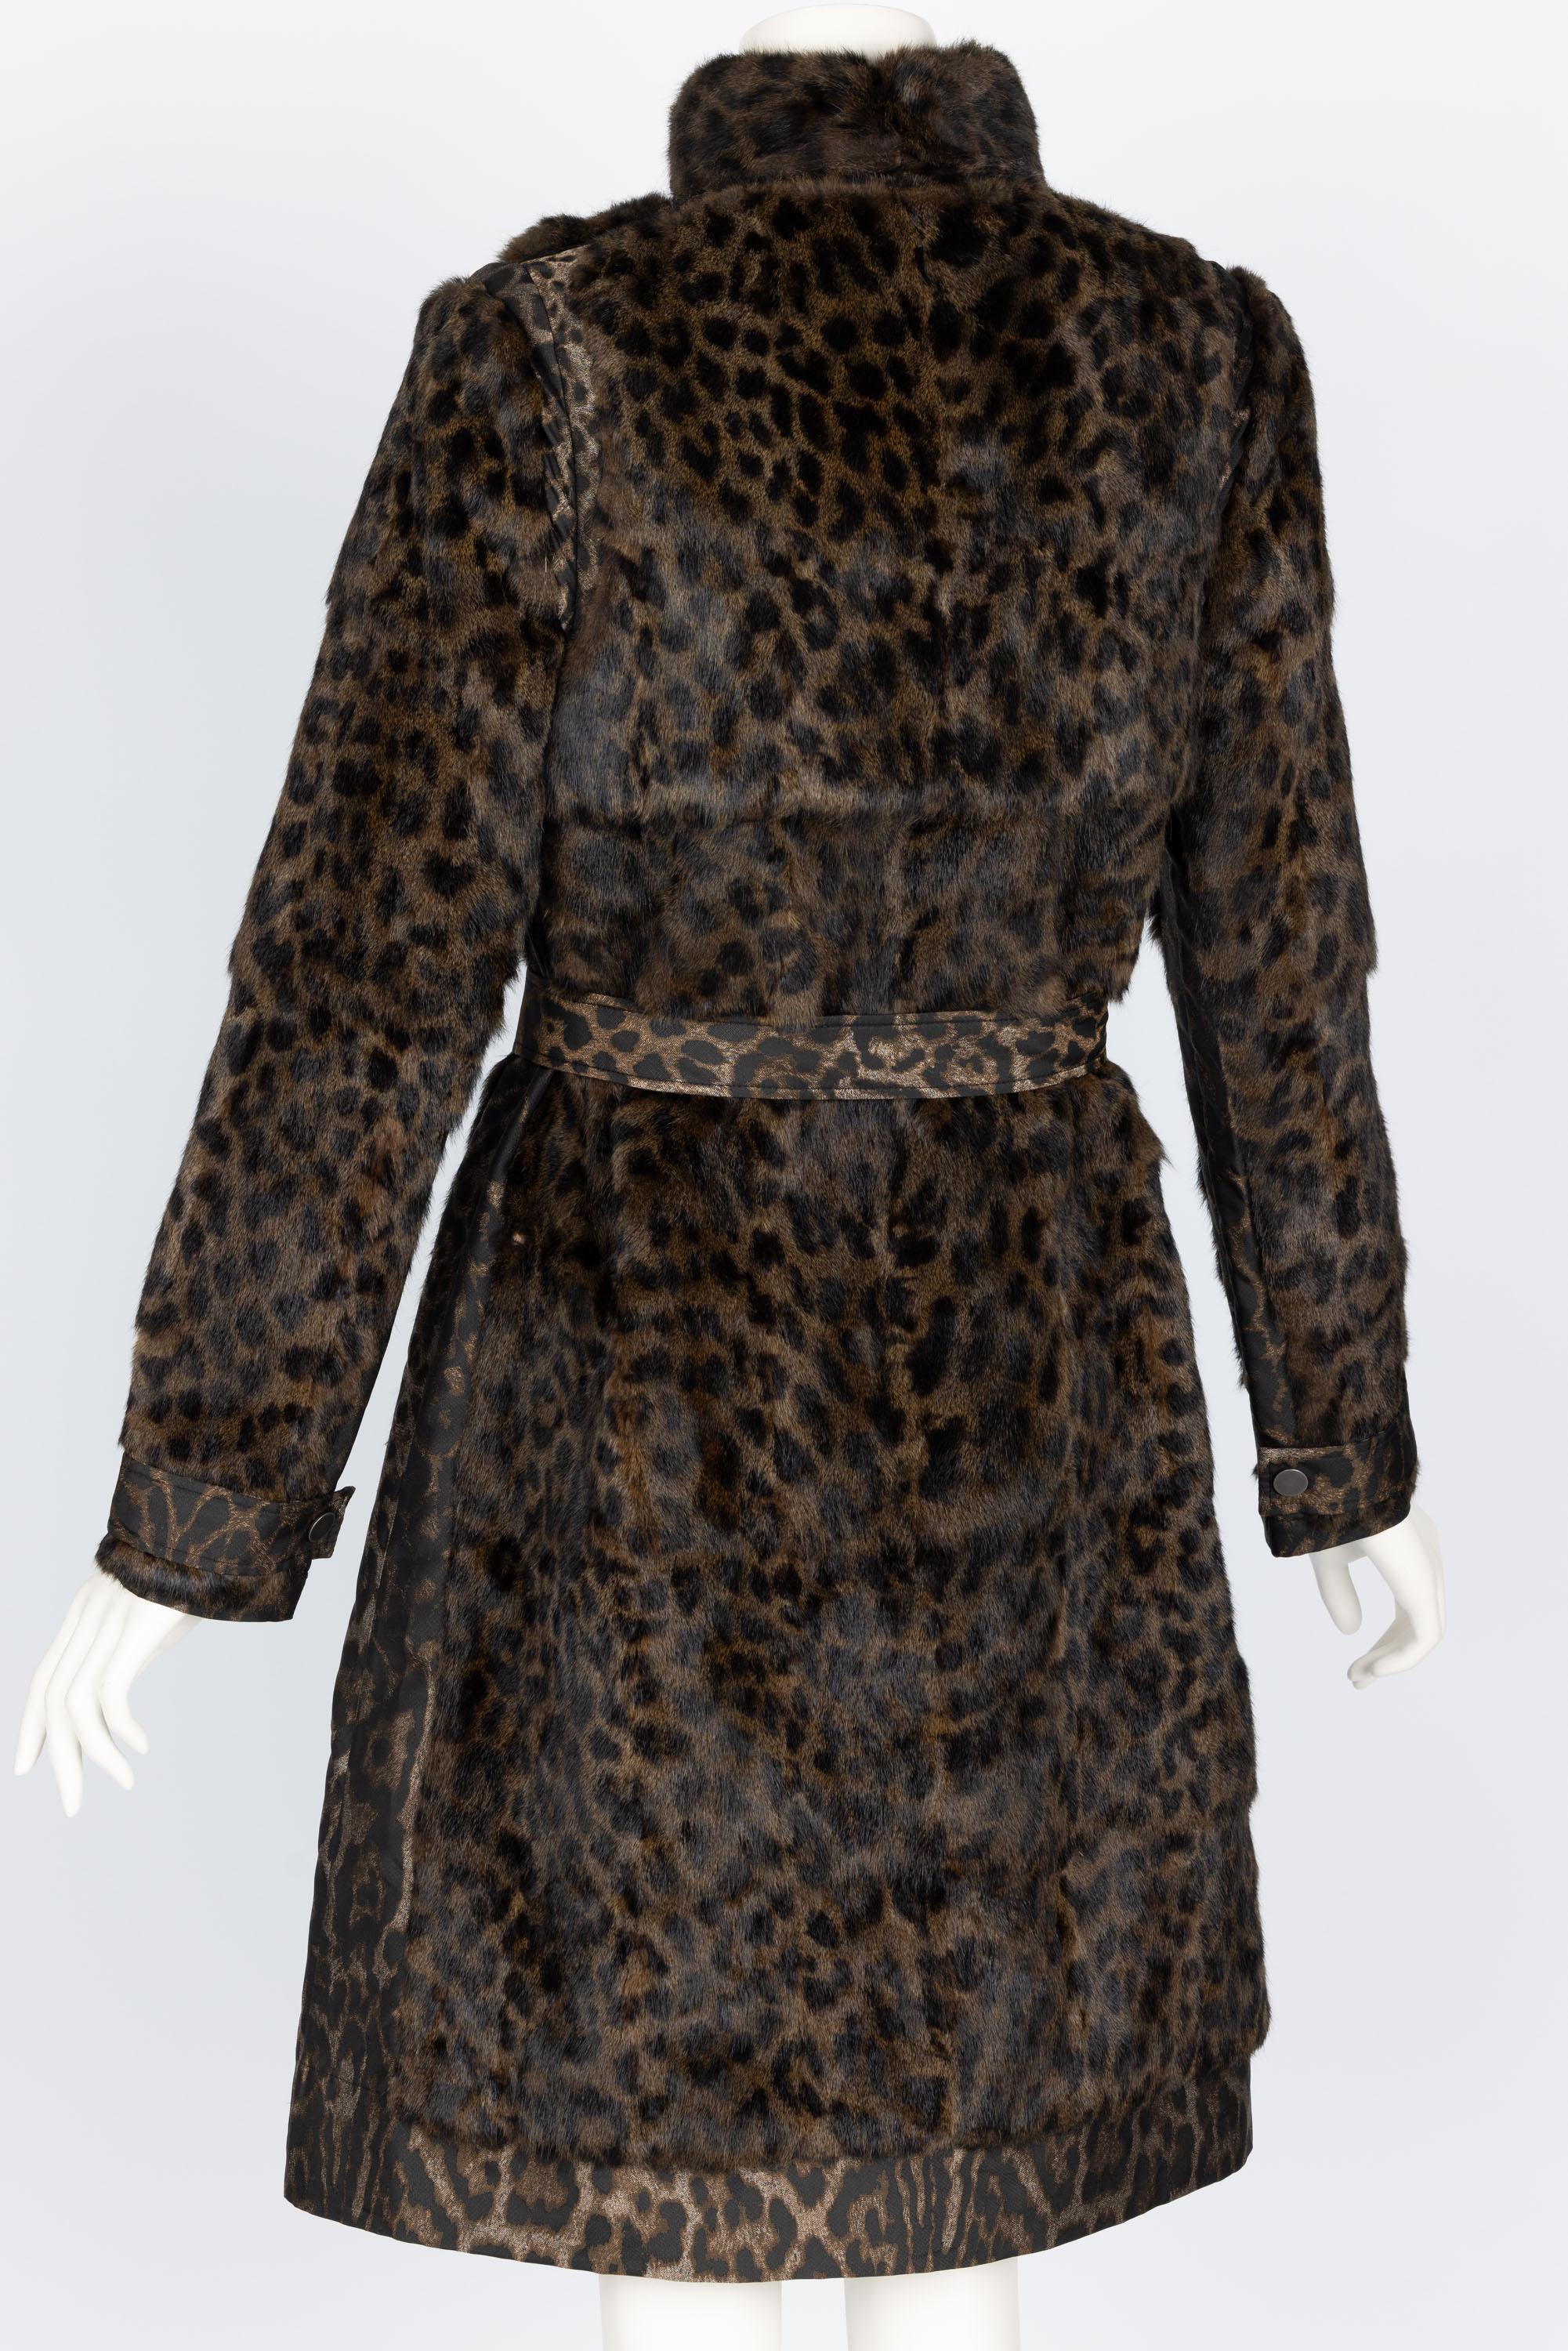 Women's Lanvin Alber Elbaz F/W 2013 Leopard Fur & Taffeta Belted Trench Coat For Sale